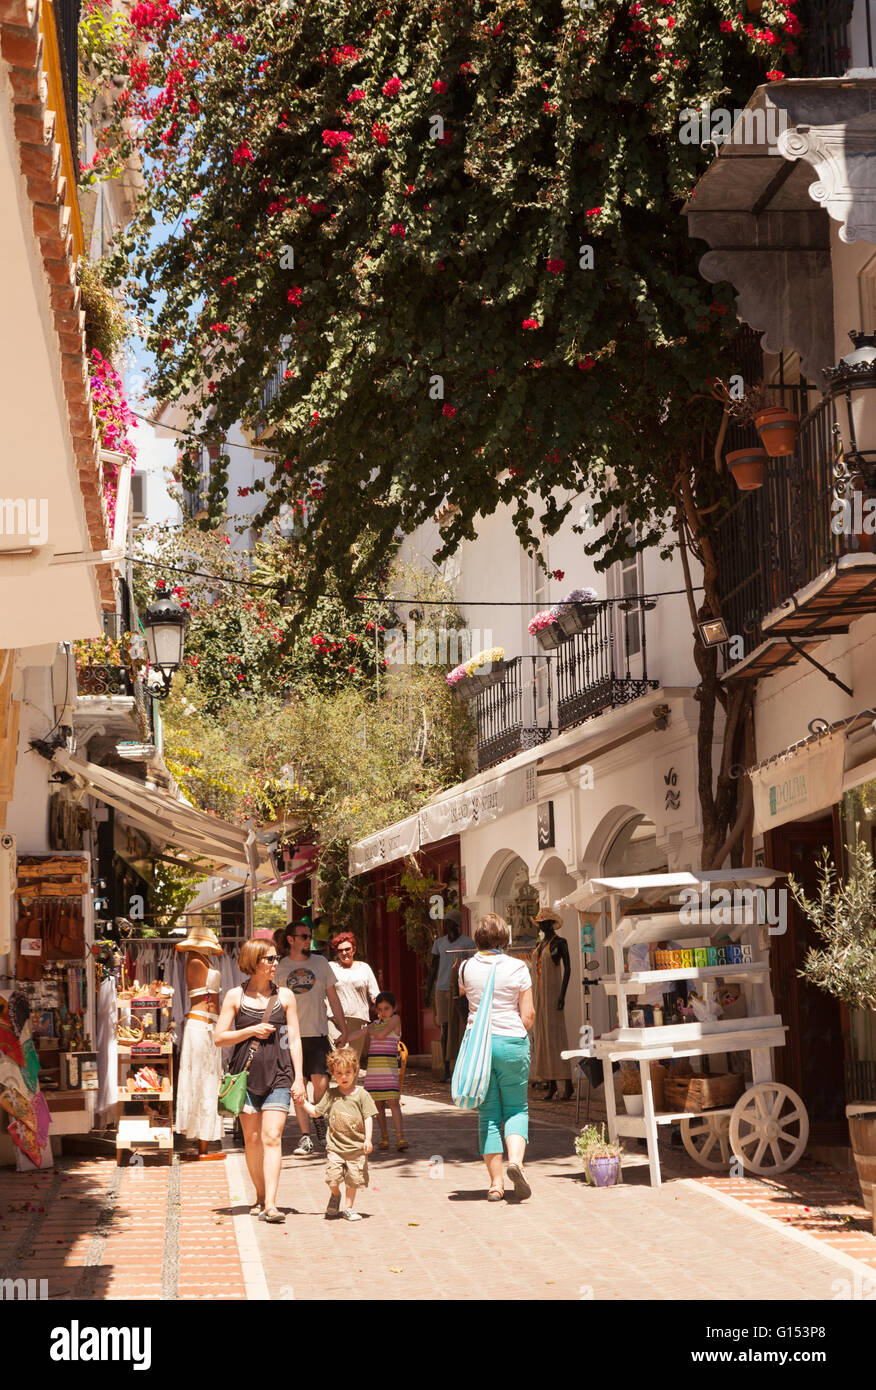 La population locale et les touristes de marcher dans la rue, la vieille ville de Marbella, Marbella, Costa del Sol, Andalousie, Espagne Europe Banque D'Images